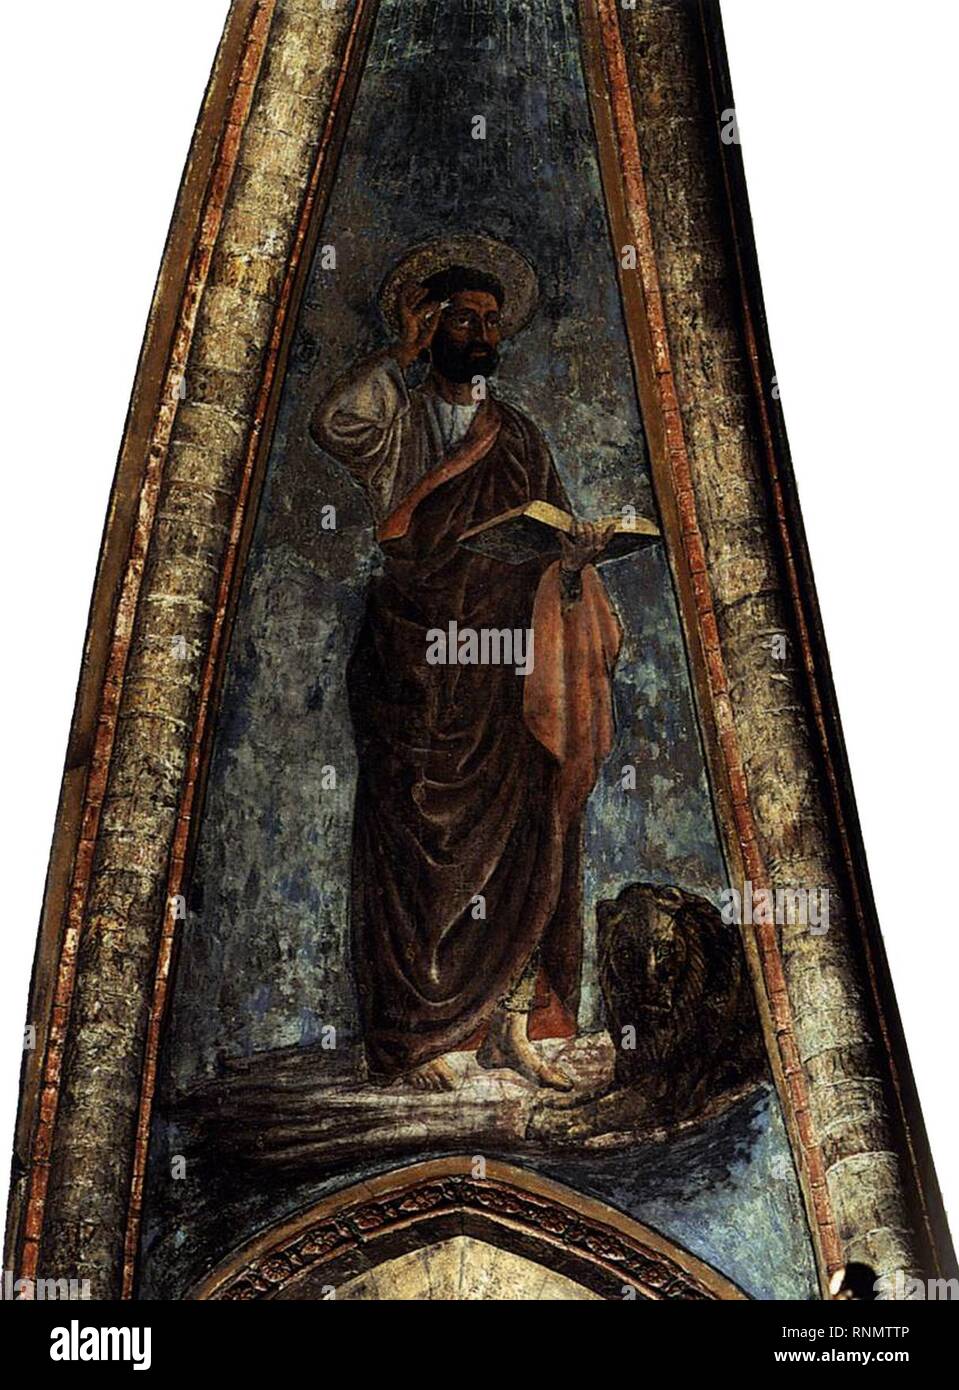 Andrea del castagno, affreschi di san zaccaria, san marco. Stock Photo